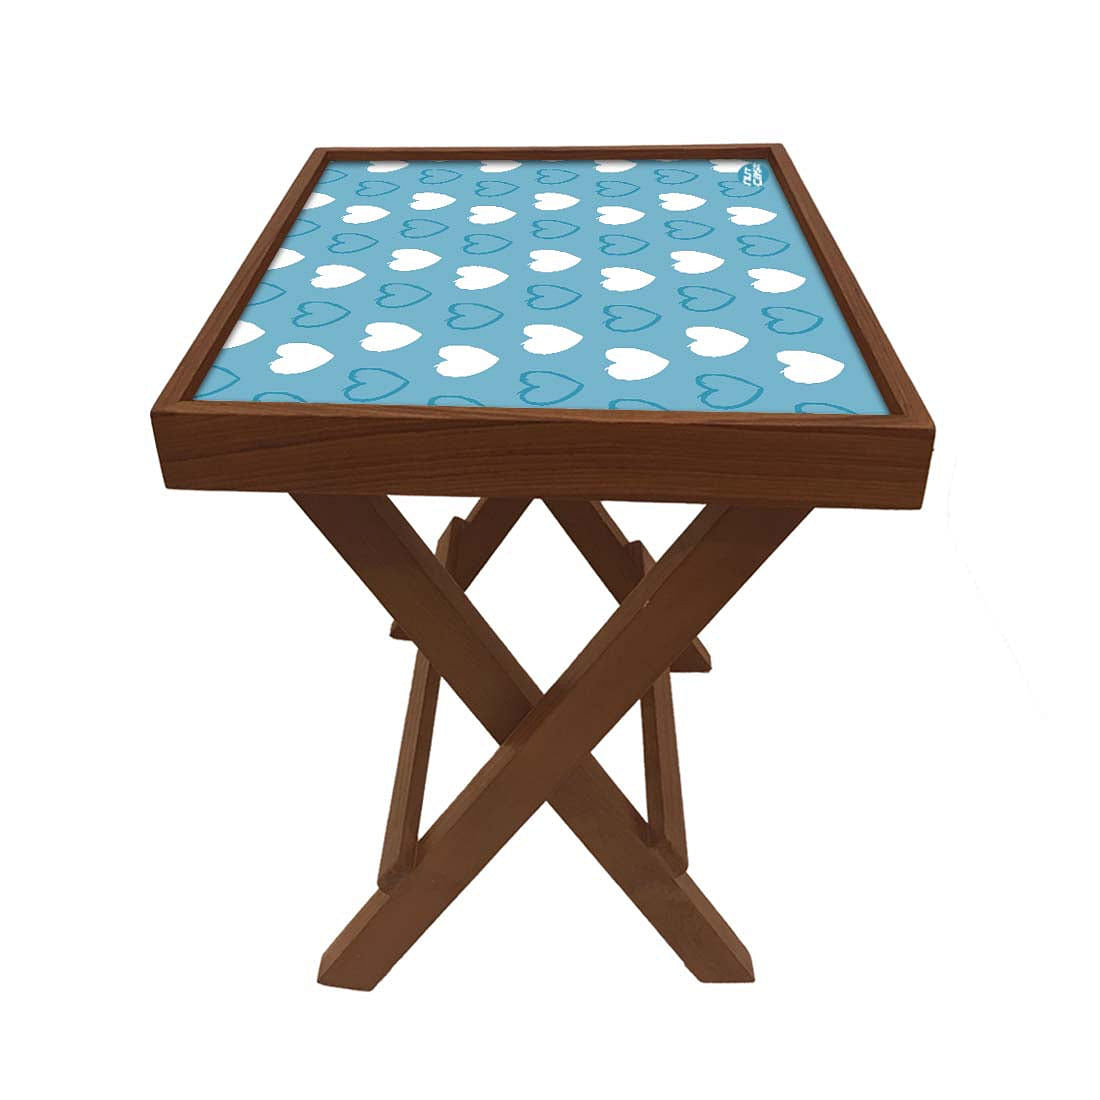 Folding Side Table - Teak Wood -Blue Heart Nutcase